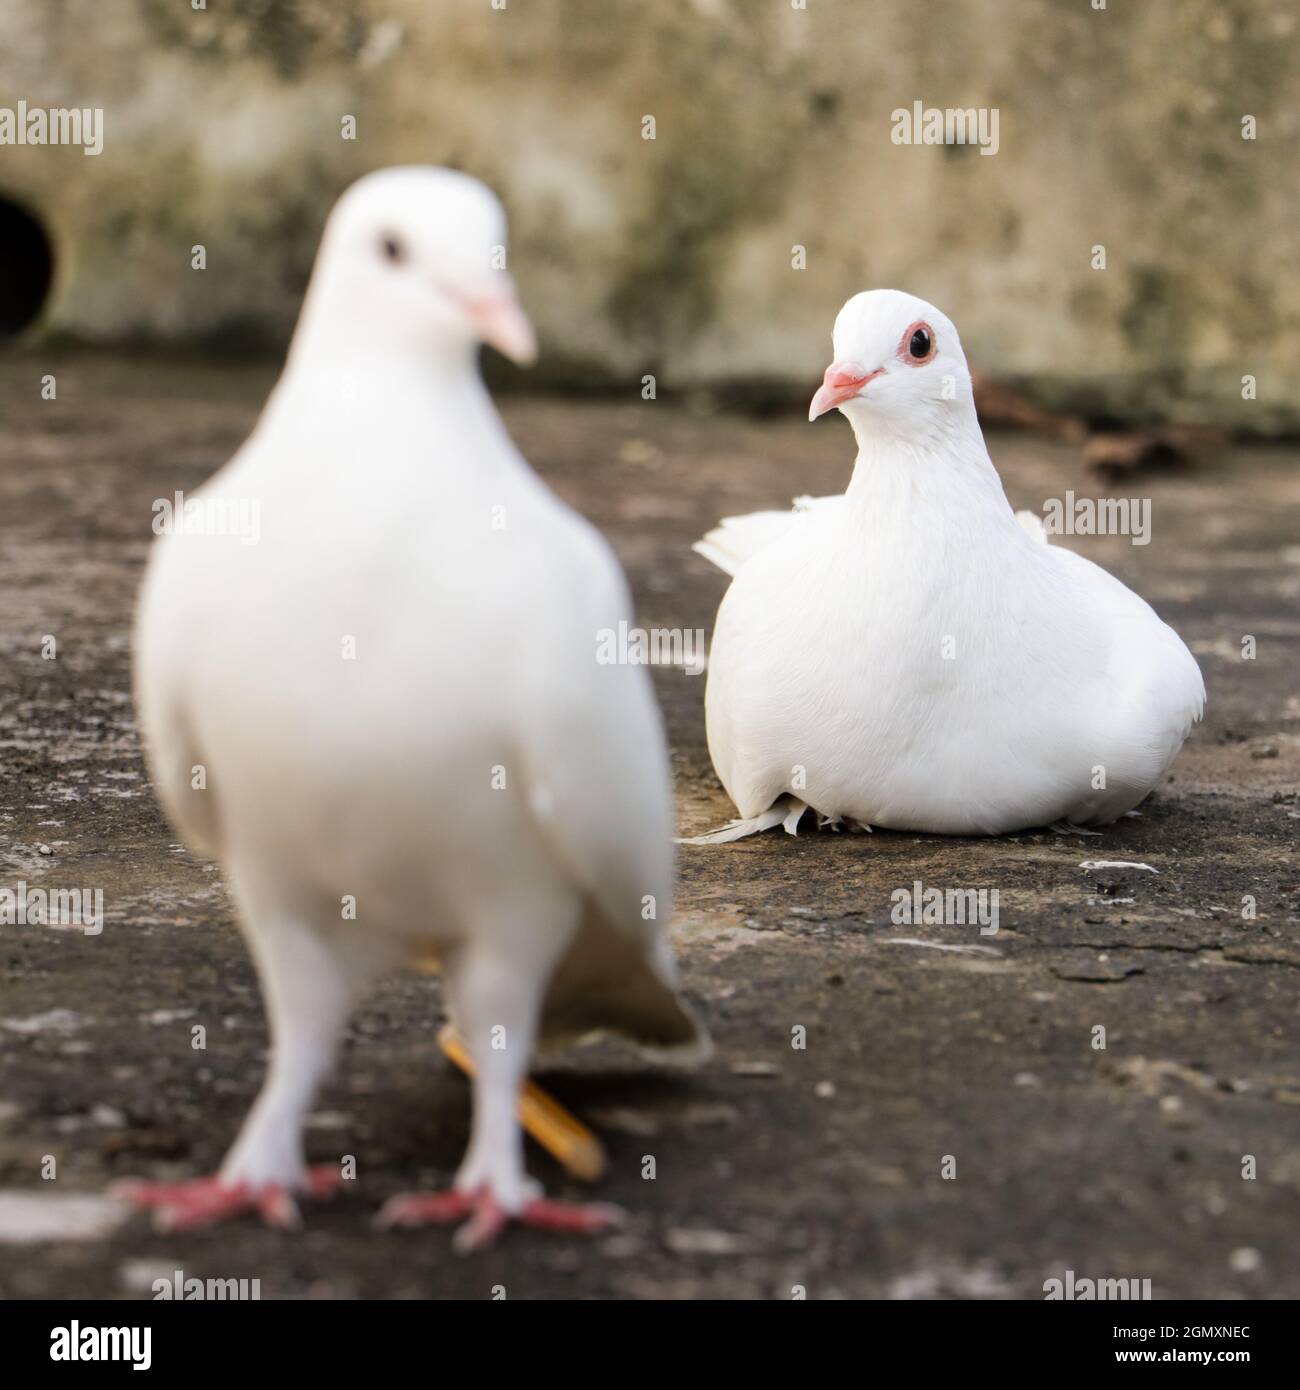 foto selectivamente enfocada de dos palomas domésticas blancas, una de pie en el frente y la otra sentada en la espalda durante una mañana brillante Foto de stock